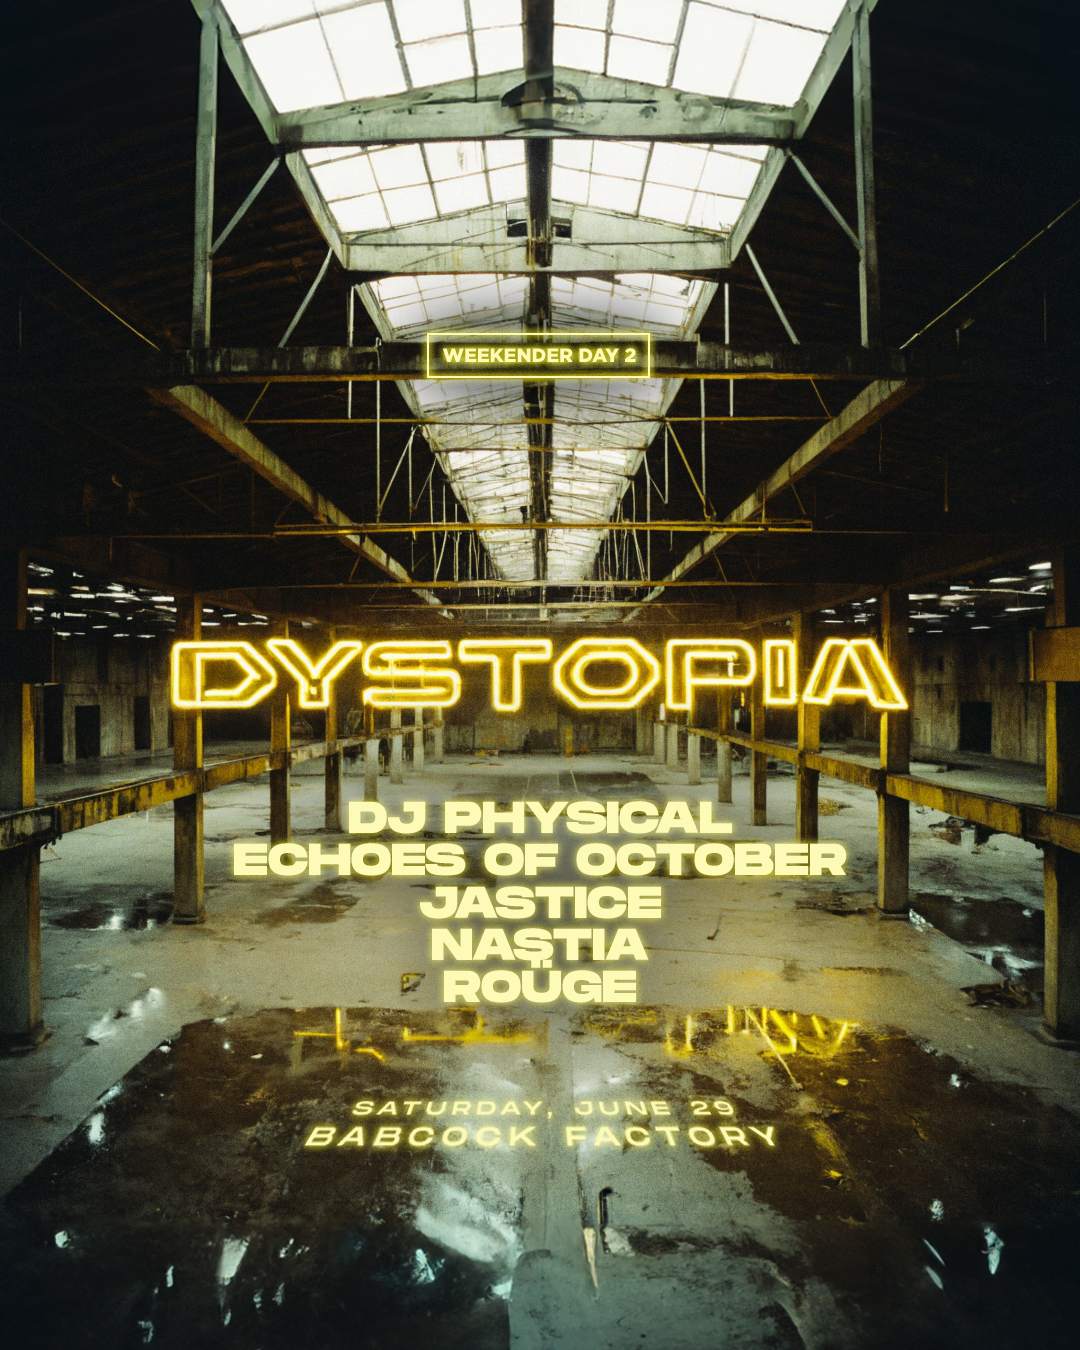 Dystopia • Babcock Factory - Página frontal